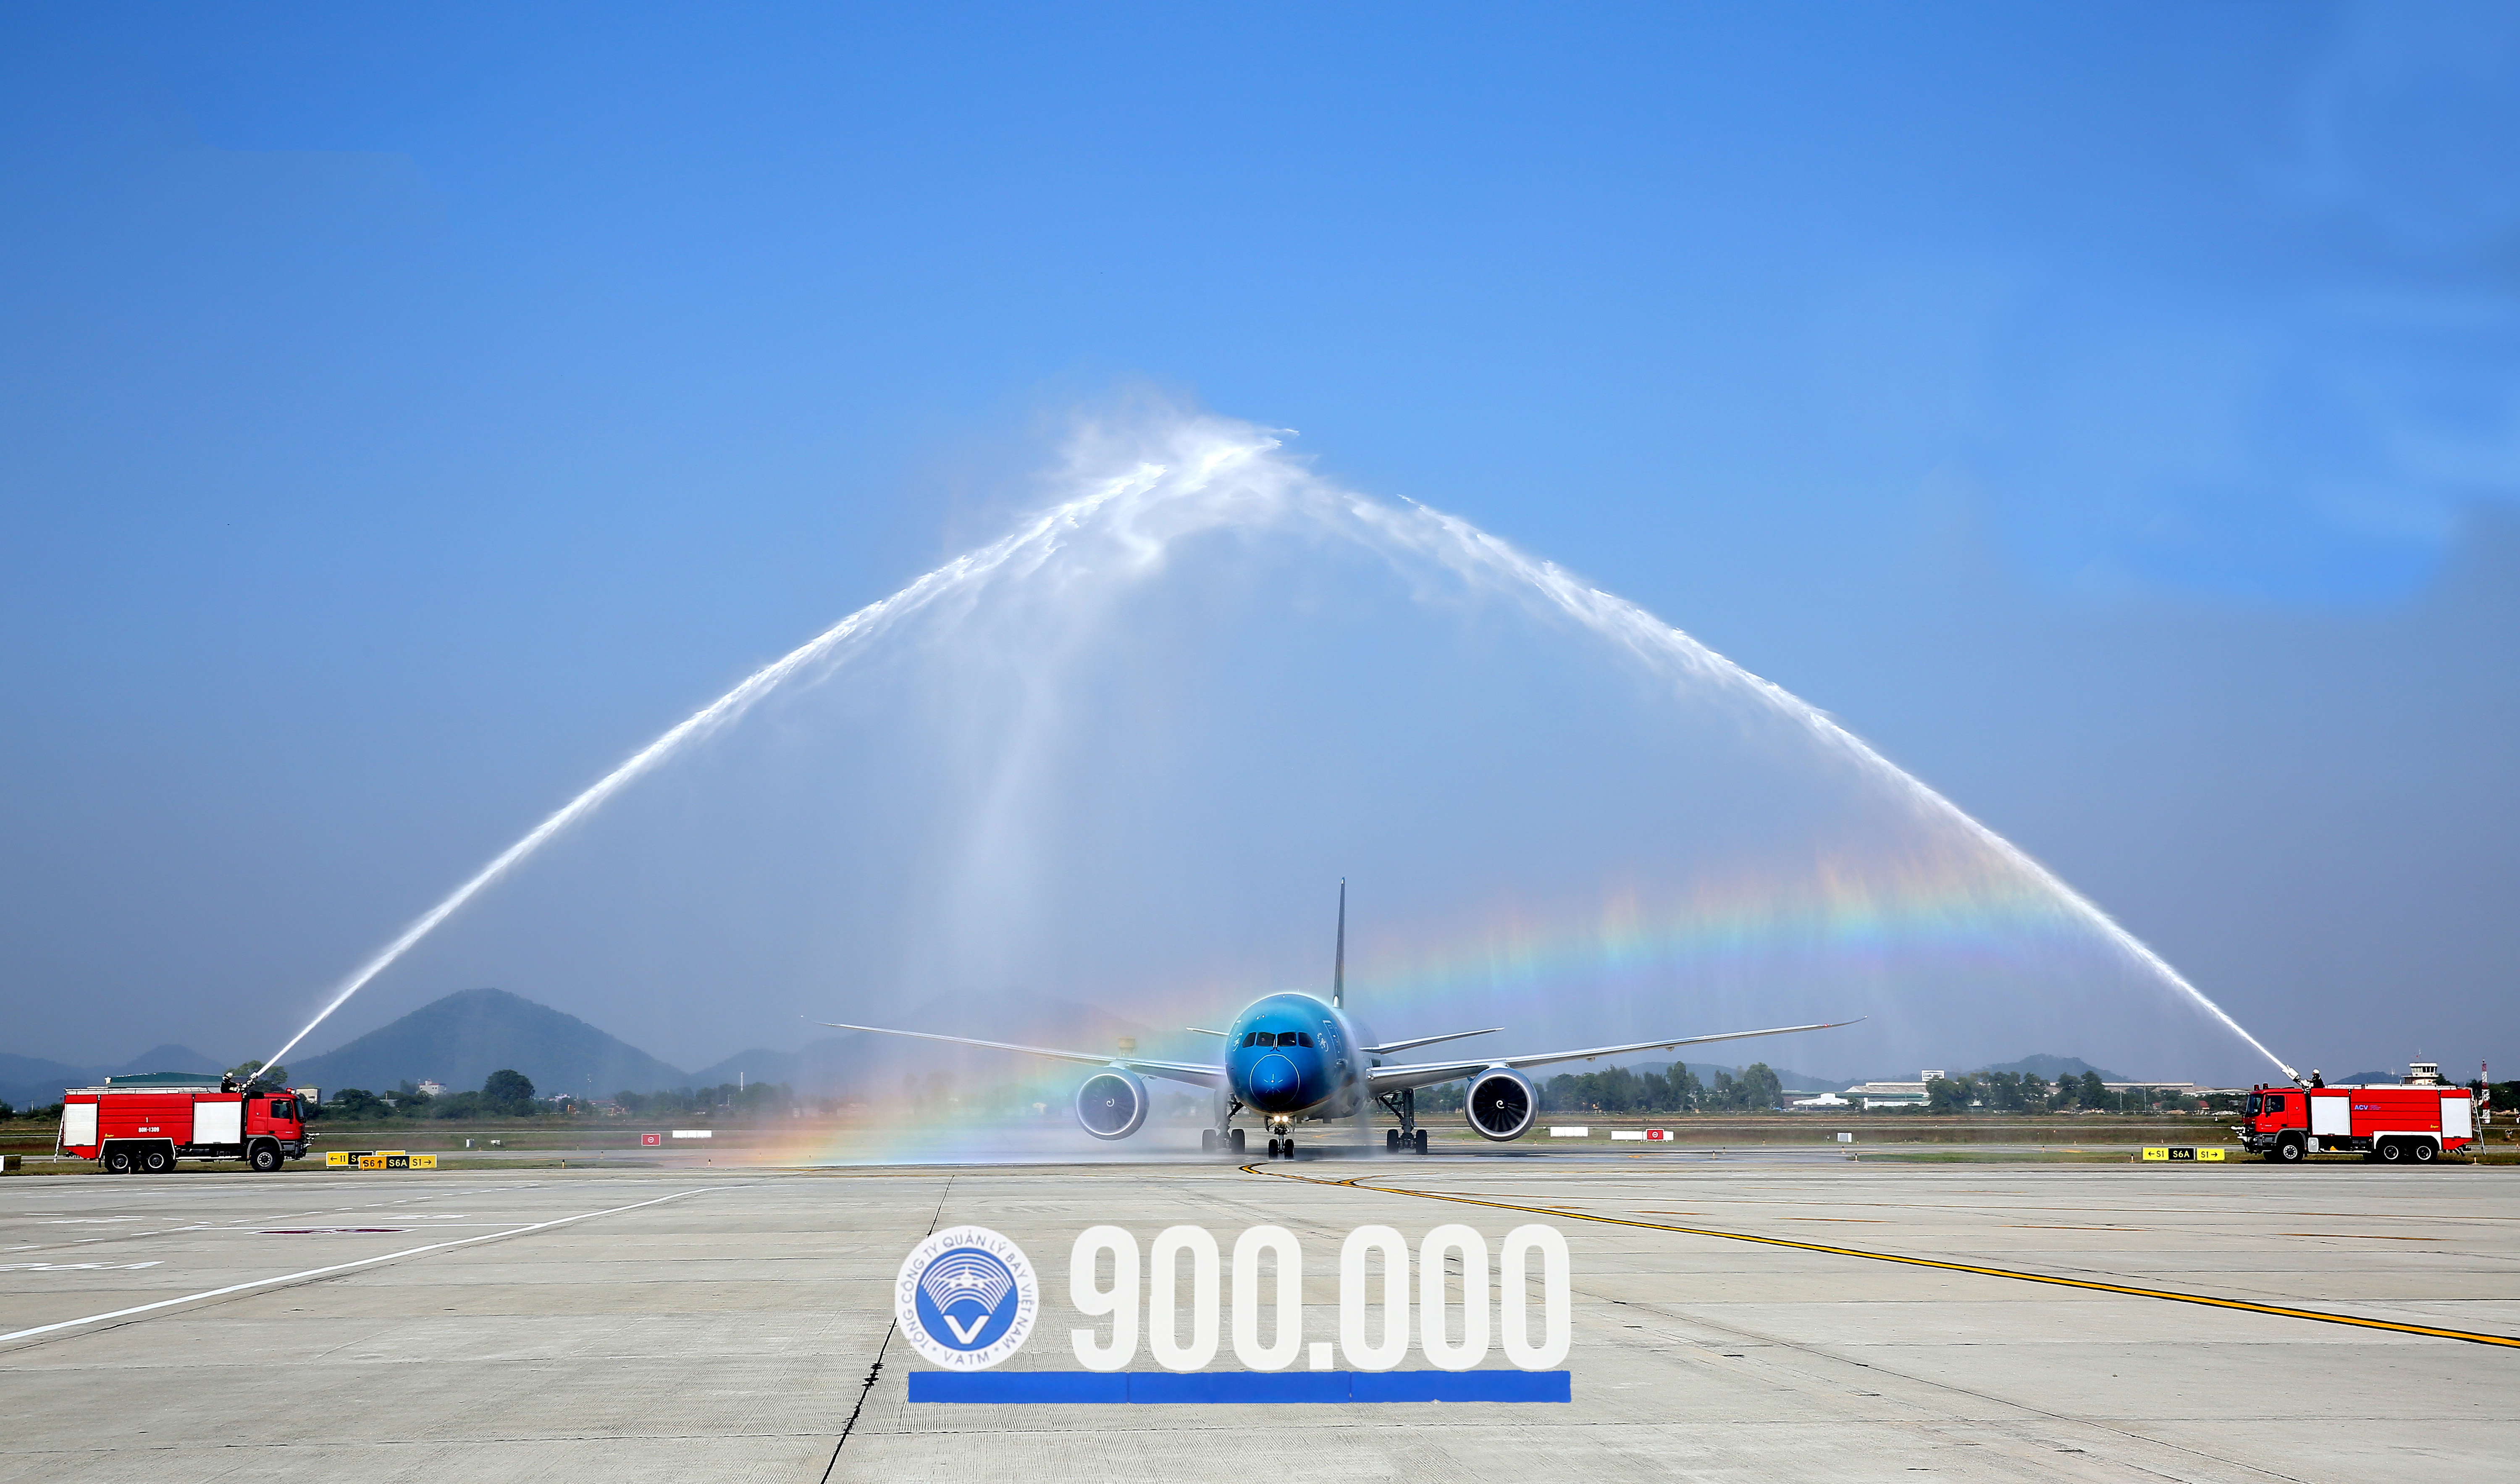 Thông tin báo chí về sự kiện chào mừng điều hành chuyến bay thứ 900.000 trong năm 2019 và chào mừng 25 năm ngày tiếp nhận phần phía Nam Vùng thông báo bay Hồ Chí Minh